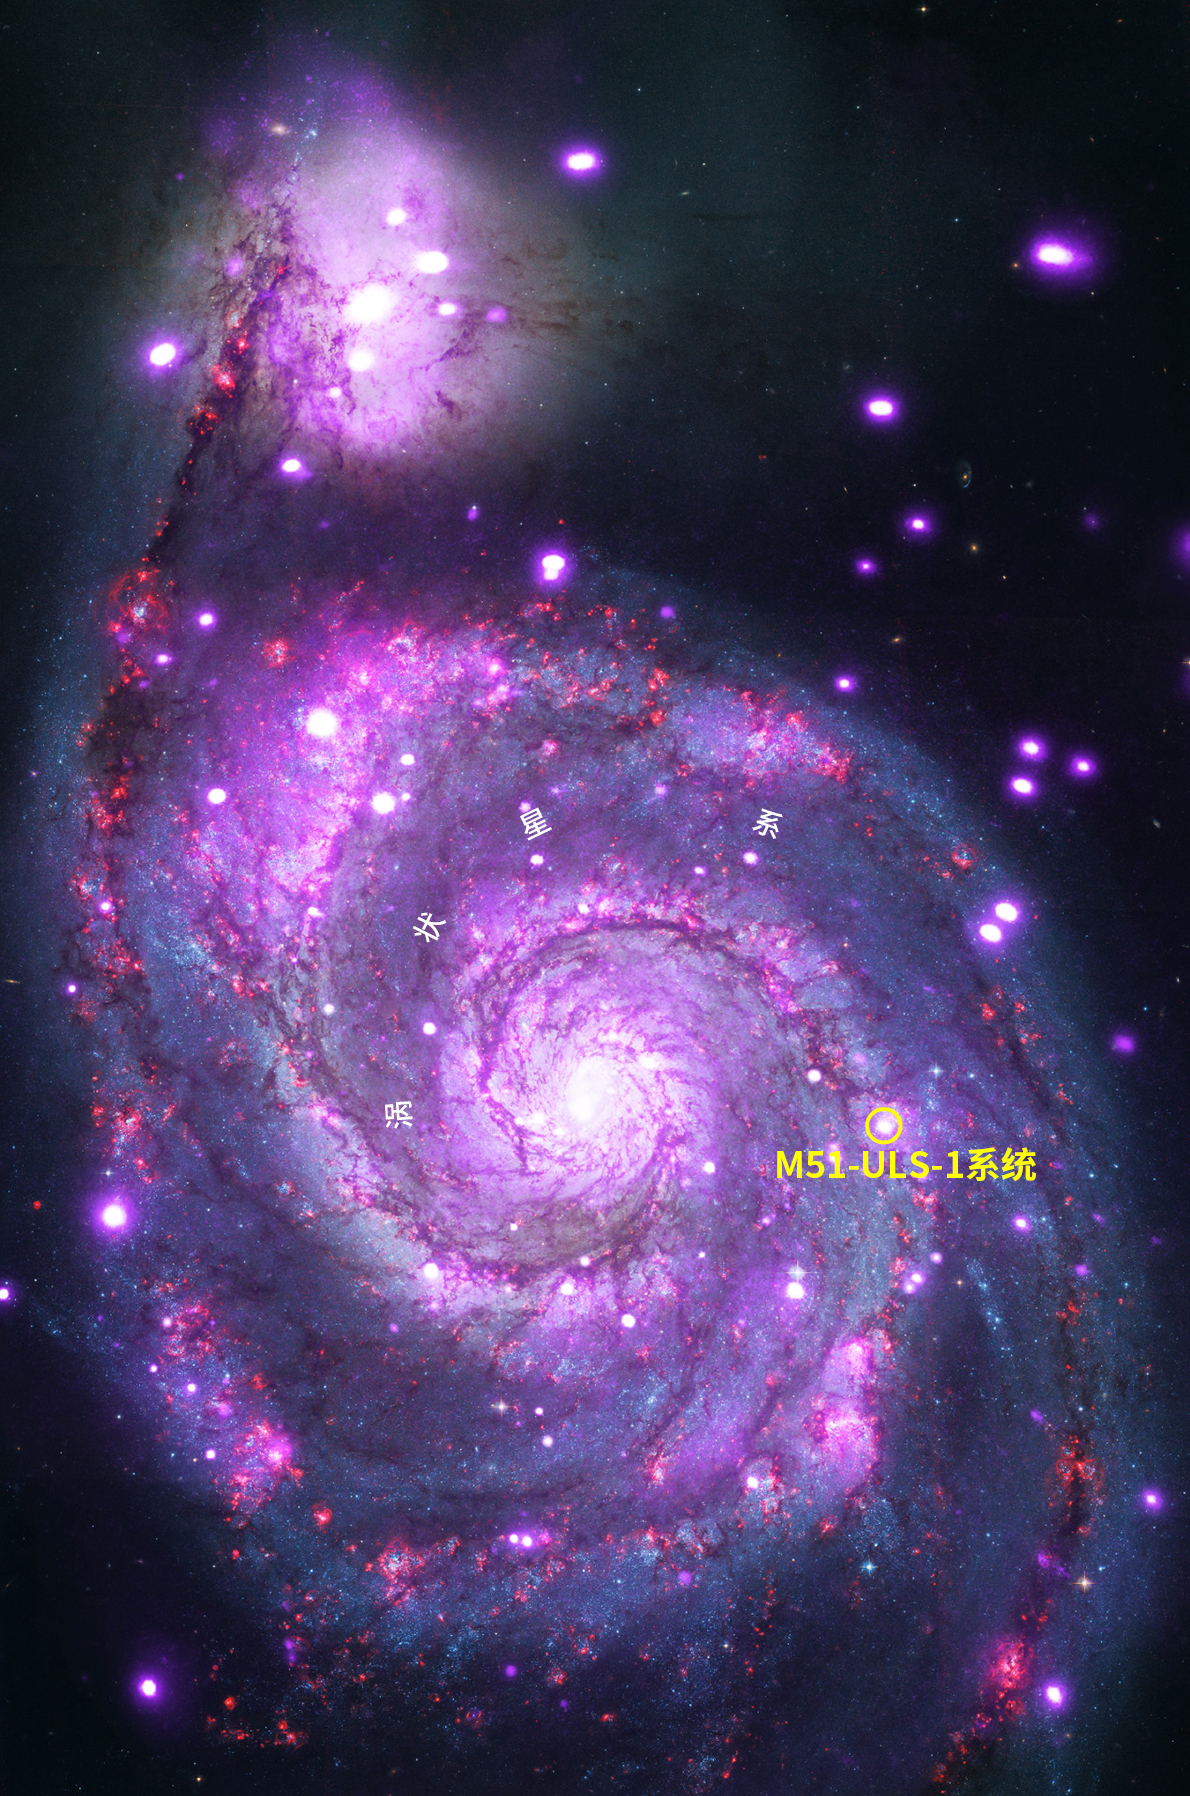 涡状星系(whirlpool galaxy)里,一颗蓝巨星正在经历着一段痛苦的日子